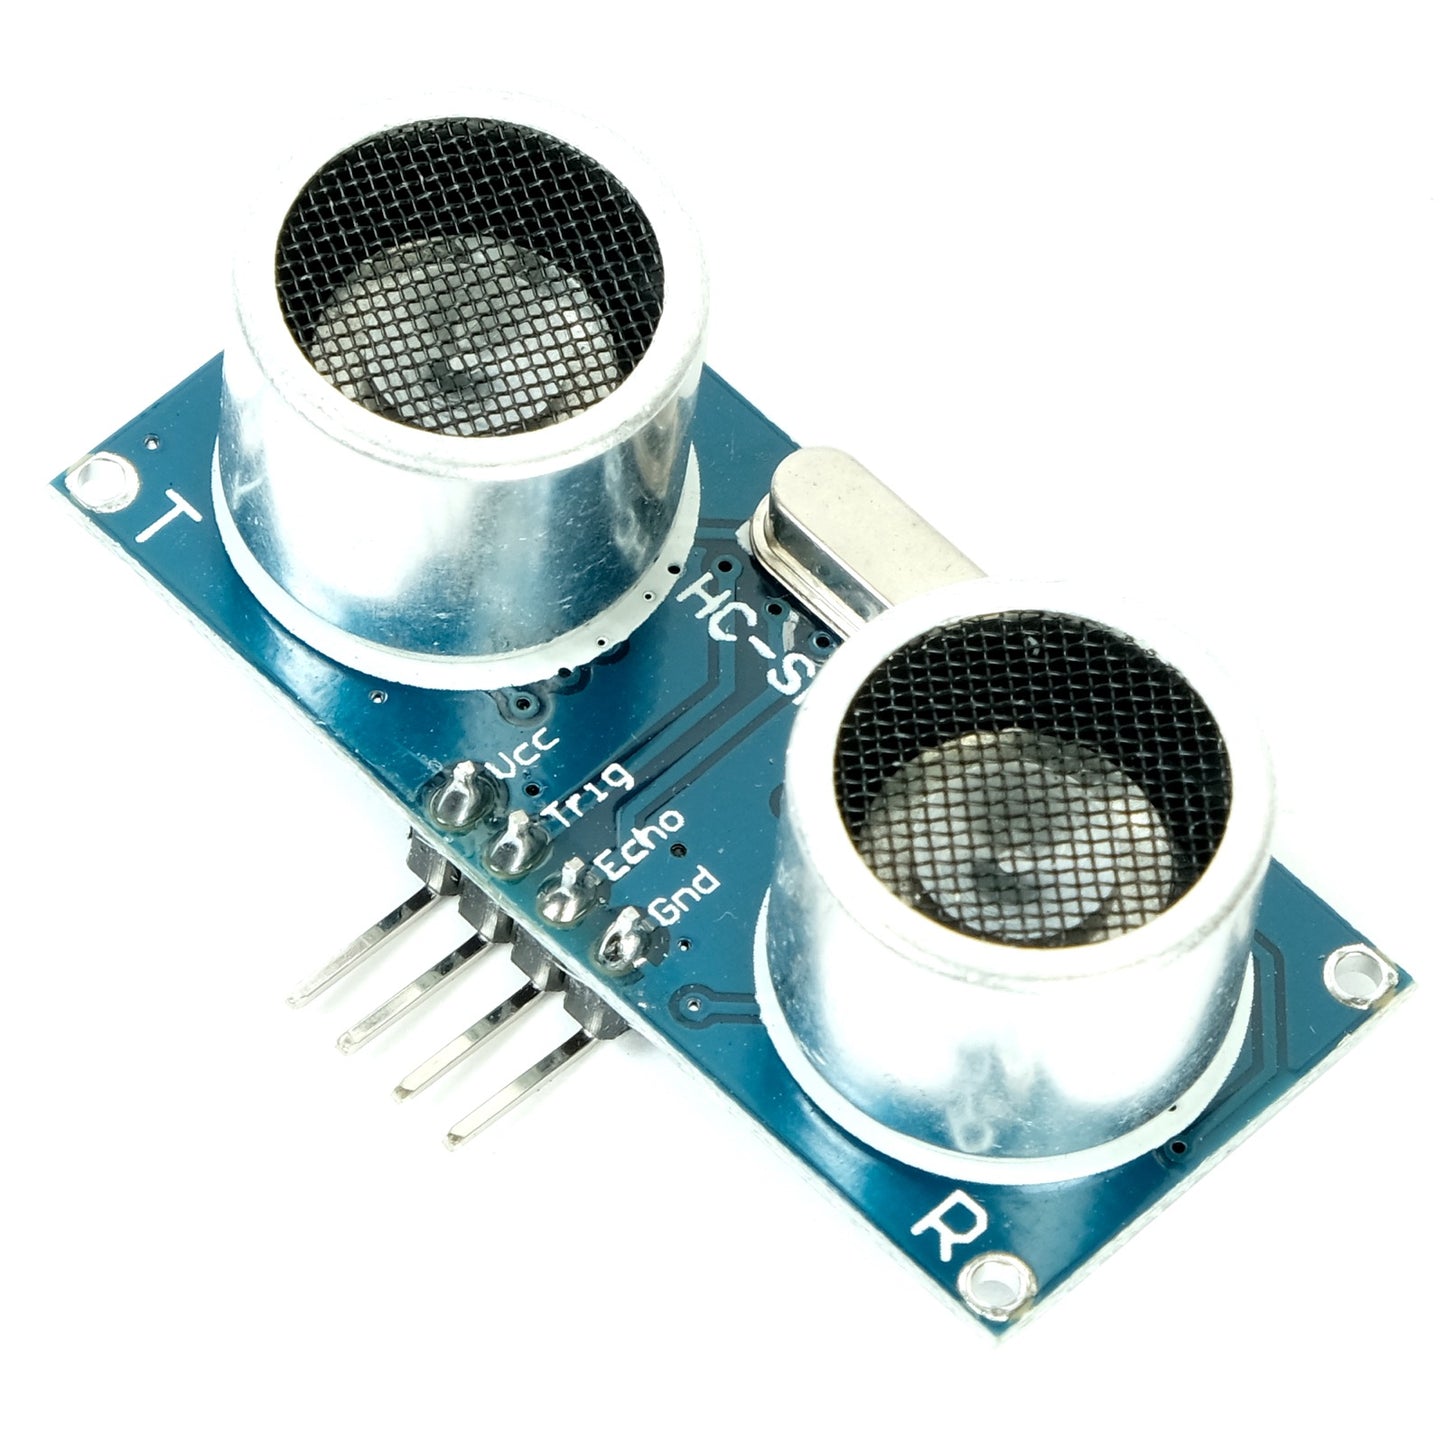 Ultrasonic Sensor HC-SR04 with Holder, blue